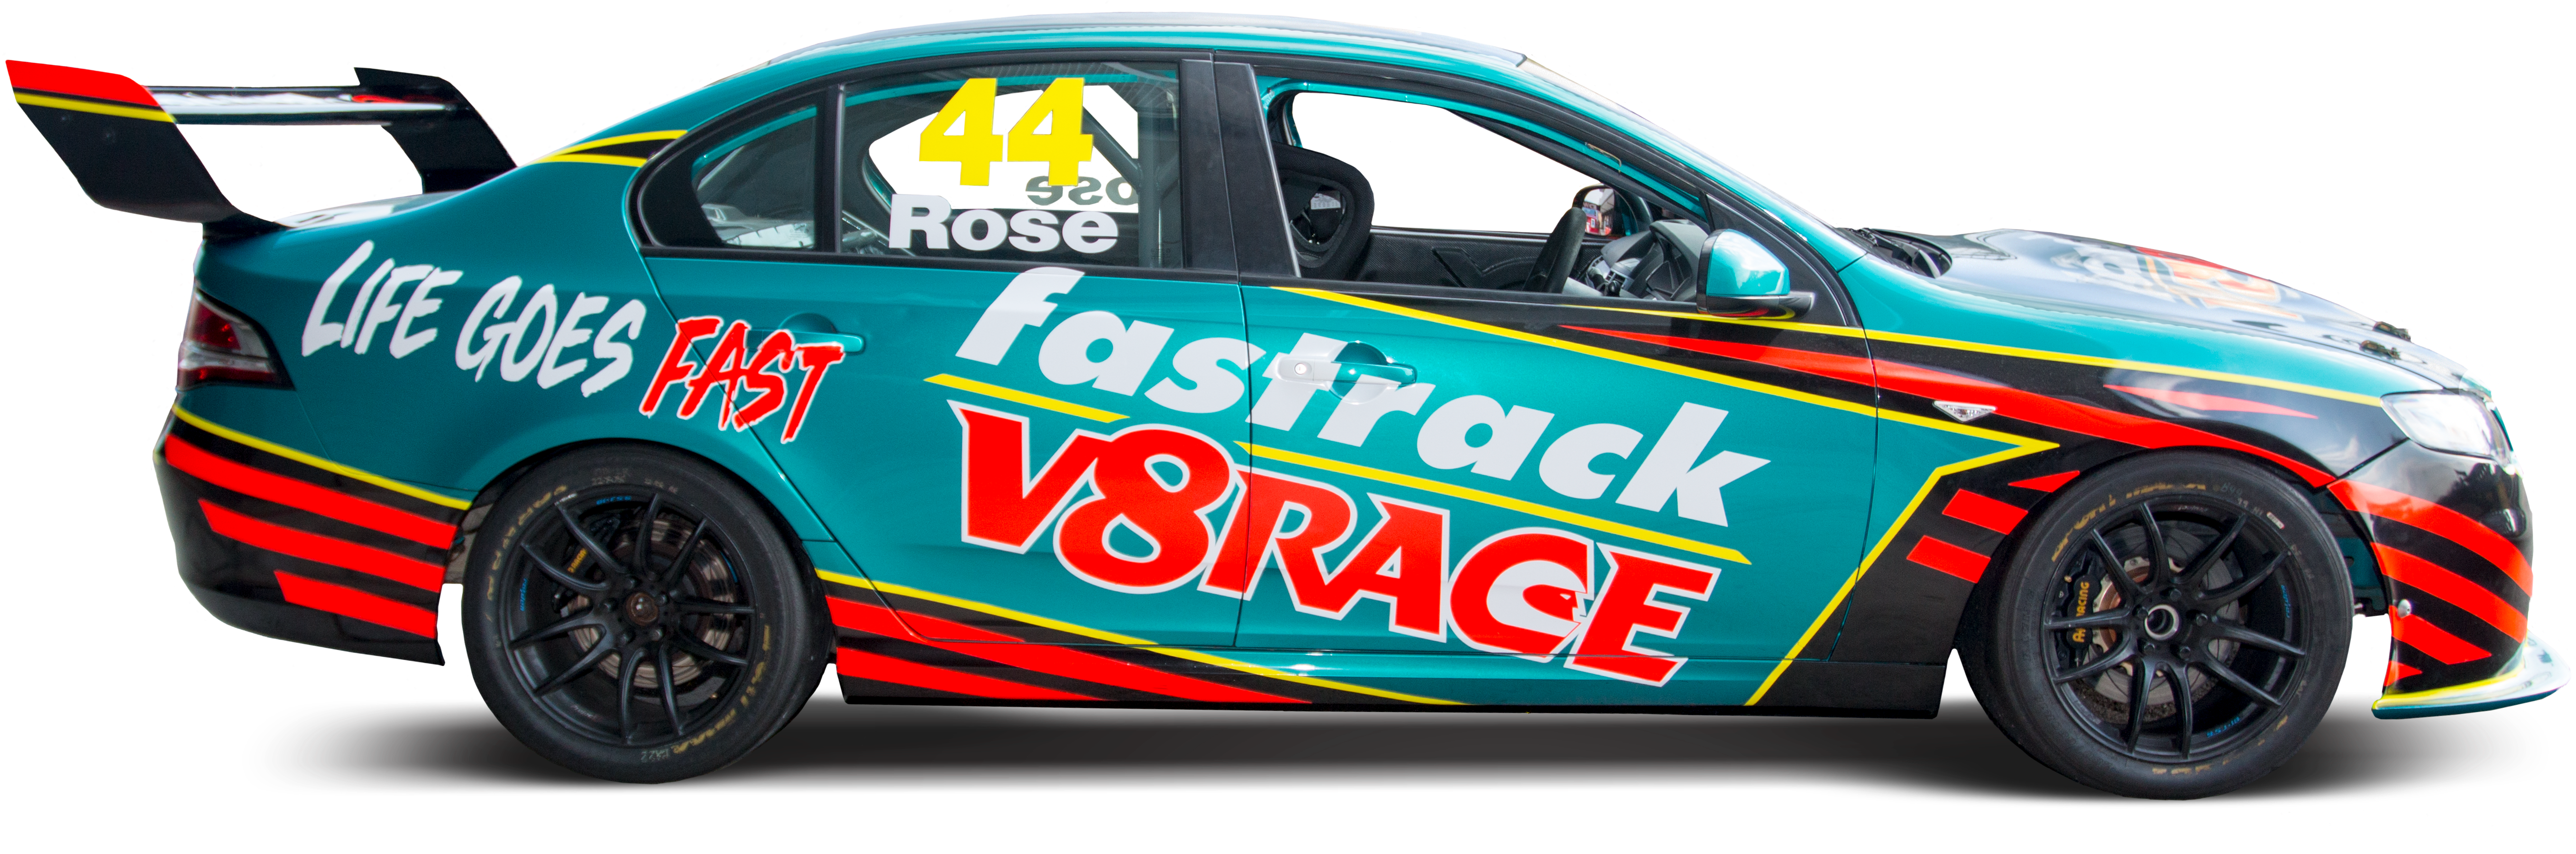 Race Car Number44 Fastrack V8 Racing